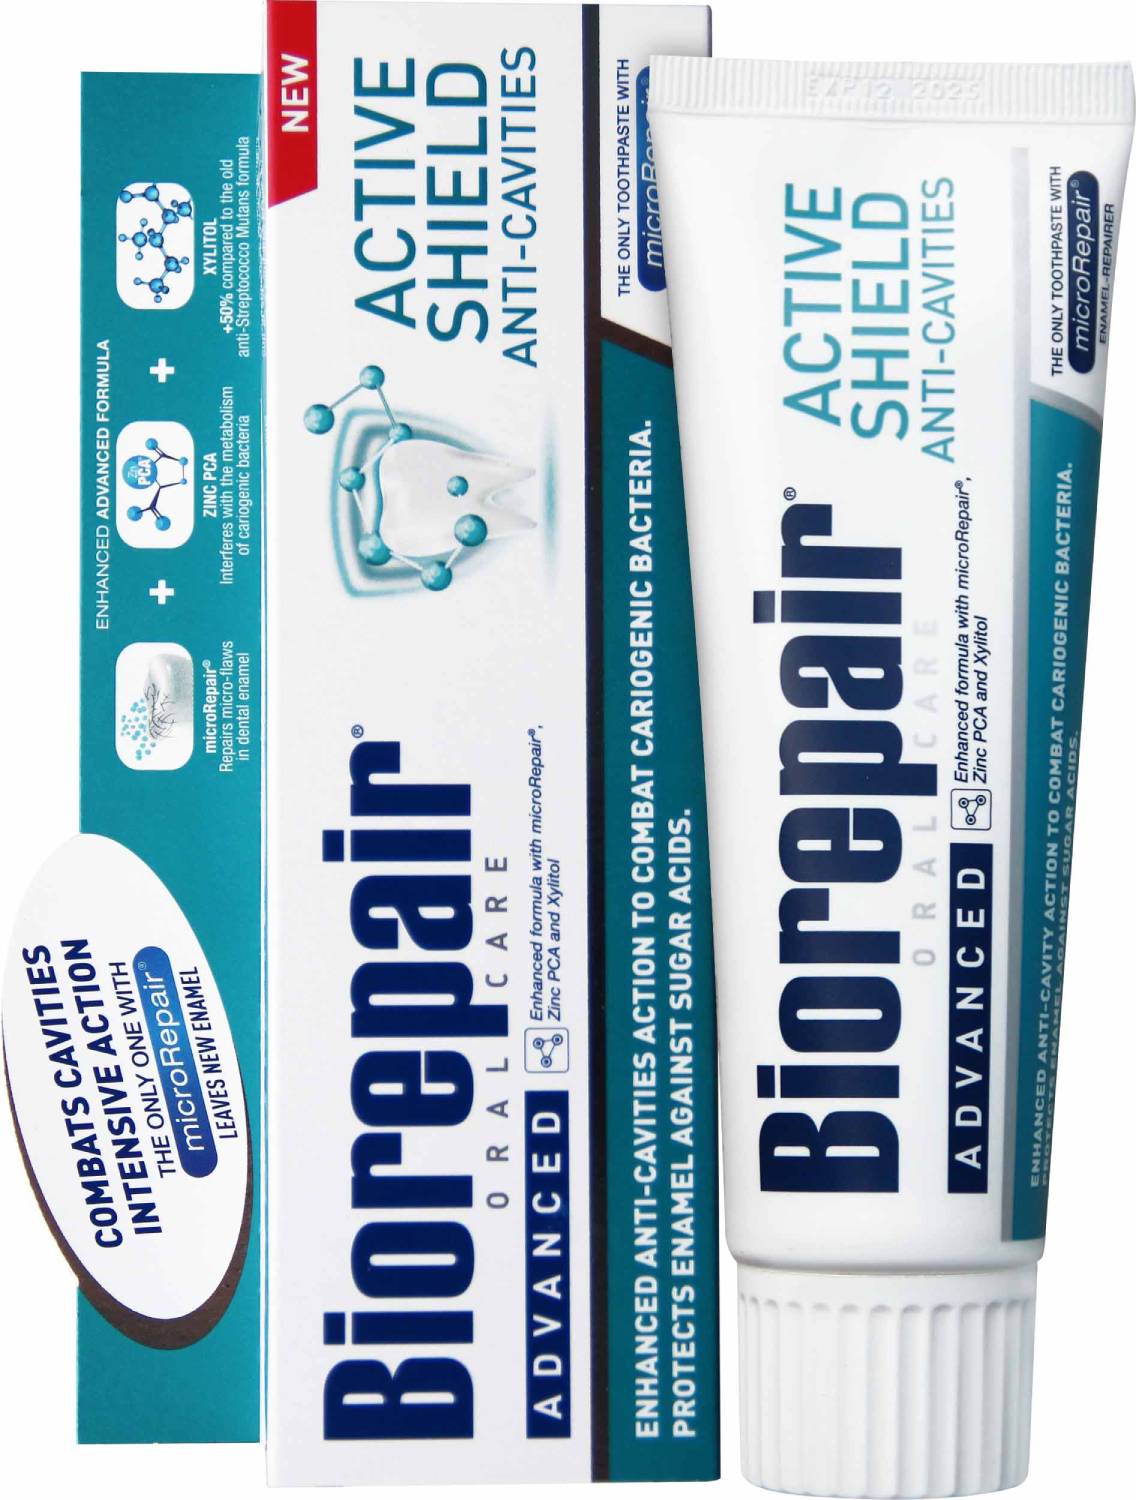 Купить Biorepair Зубная паста активная защита эмали зубов 75 мл (Biorepair, Отбеливание и лечение), Италия